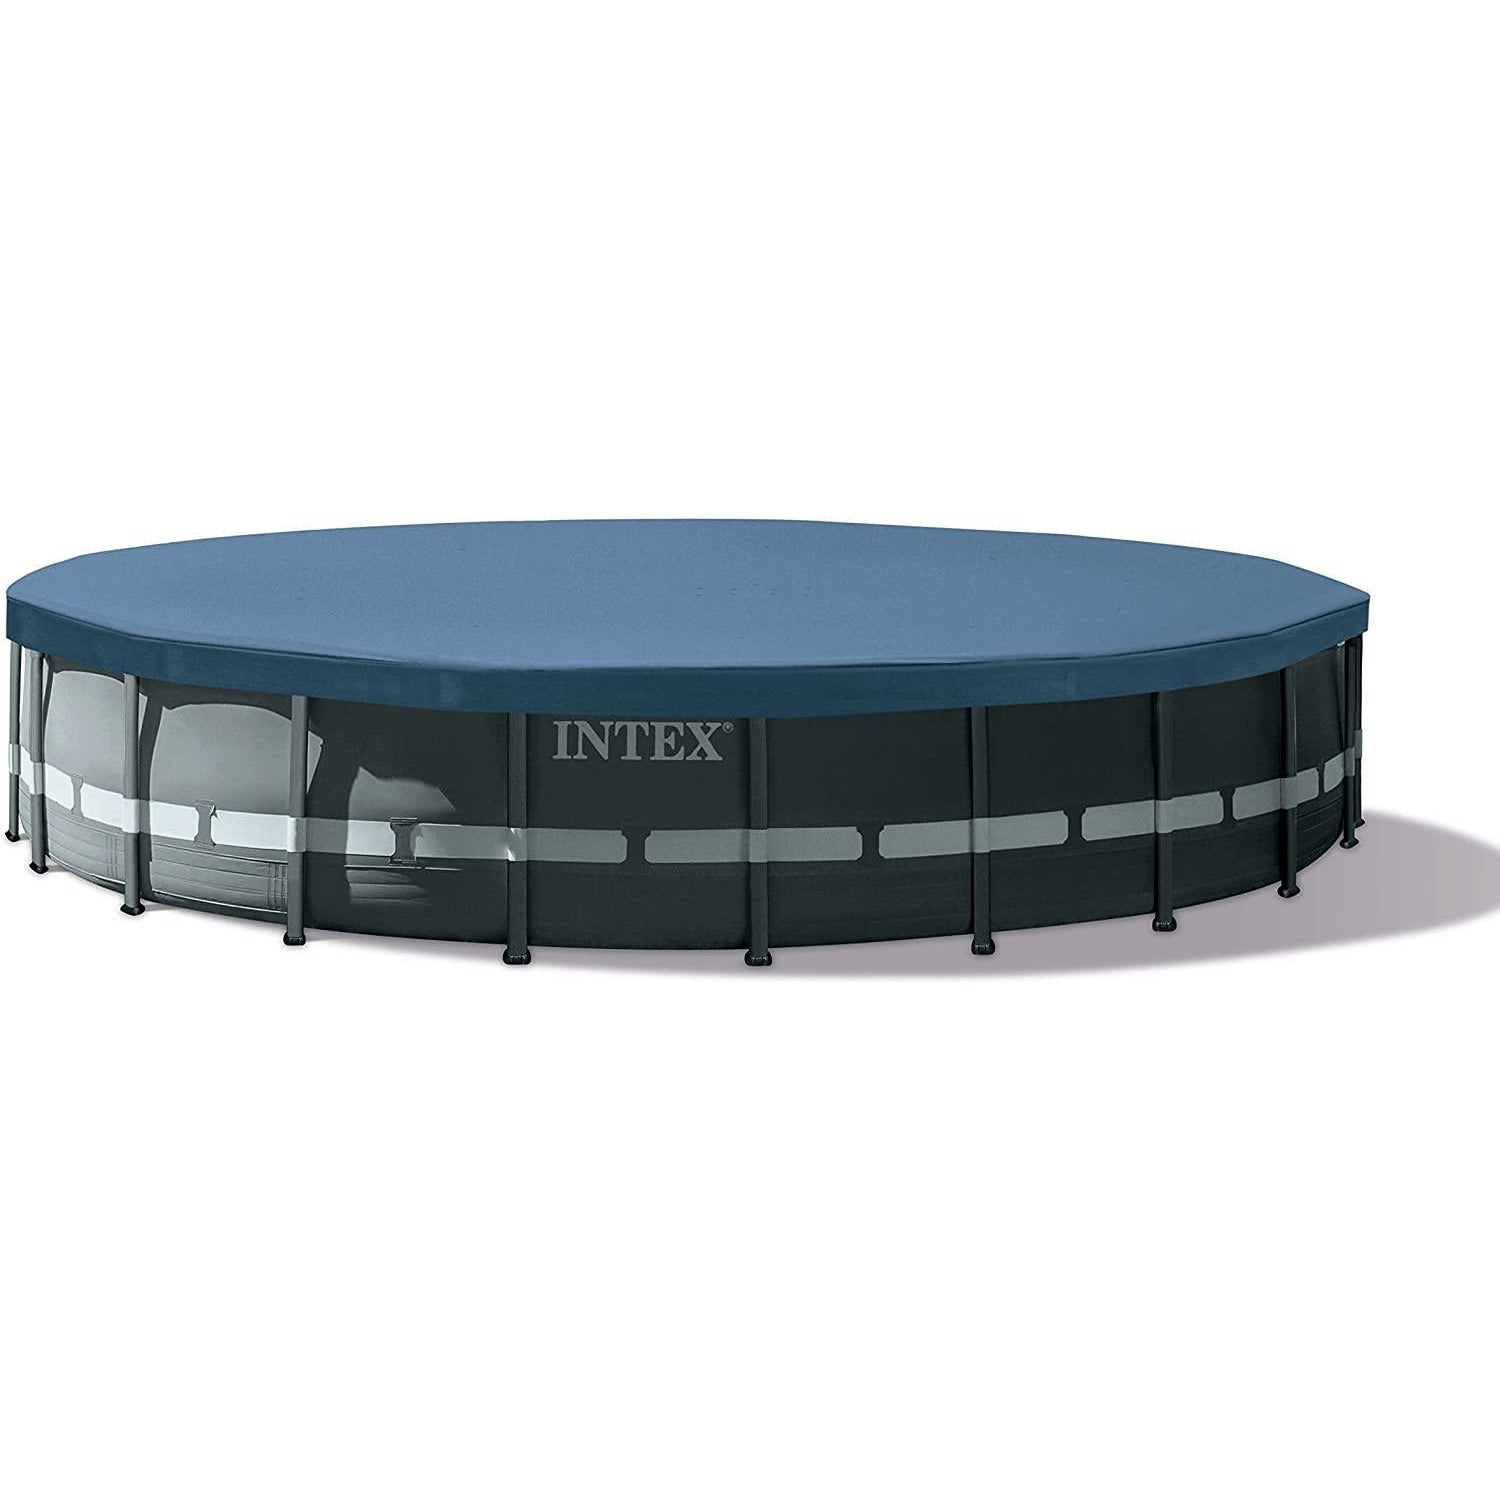 Intex Ultra XTR Pool 20x48 - Pelican Shops